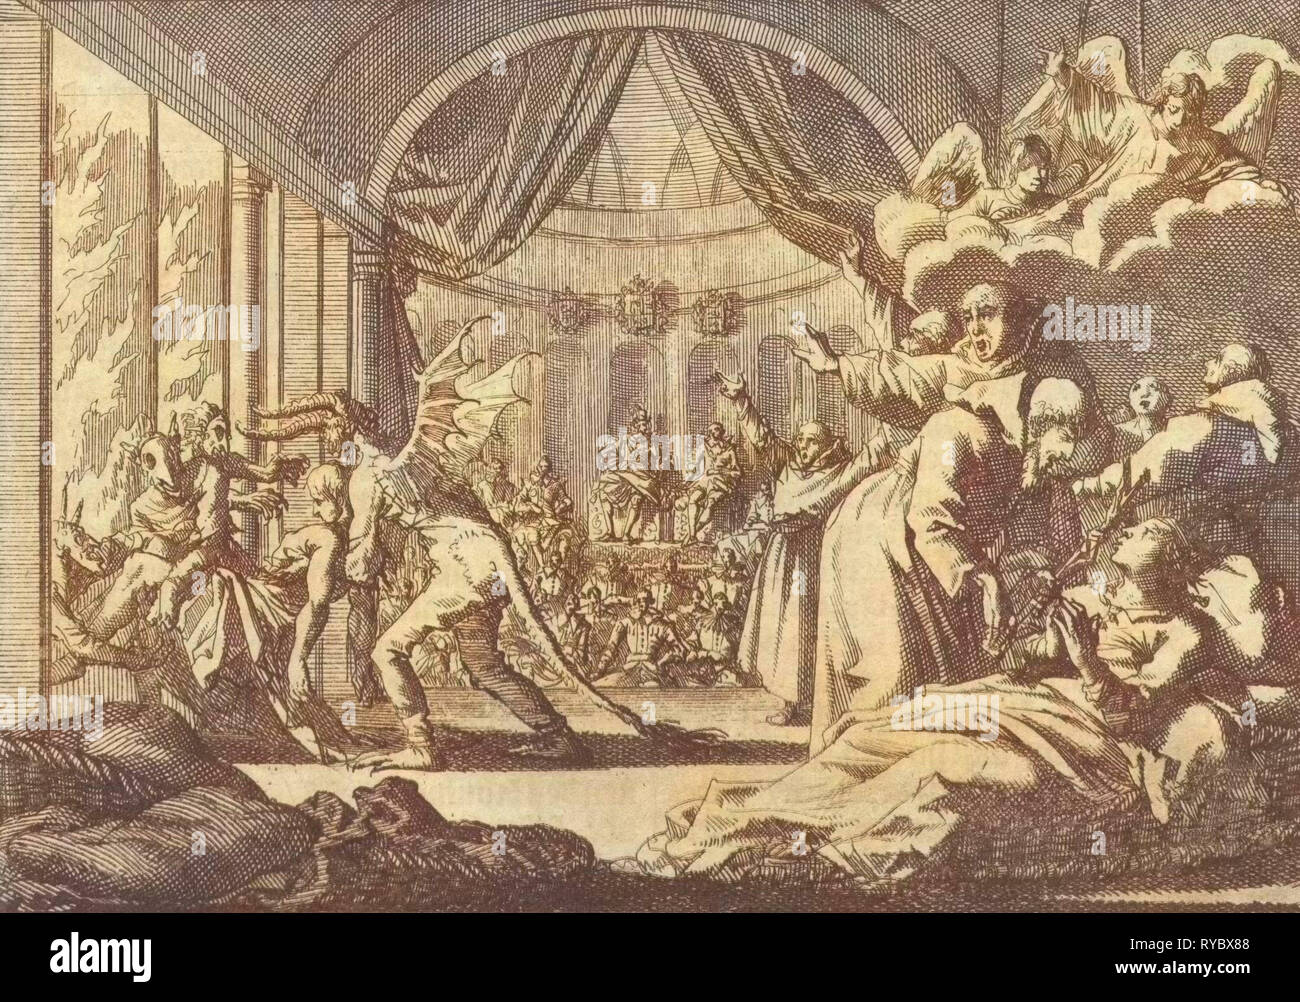 Performance théâtrale satirique donné par le roi Philippe IV d'Espagne à son invité Charles I d'Angleterre, 1623, Jan Luyken, Pieter van der Aa (I), 1698 Banque D'Images